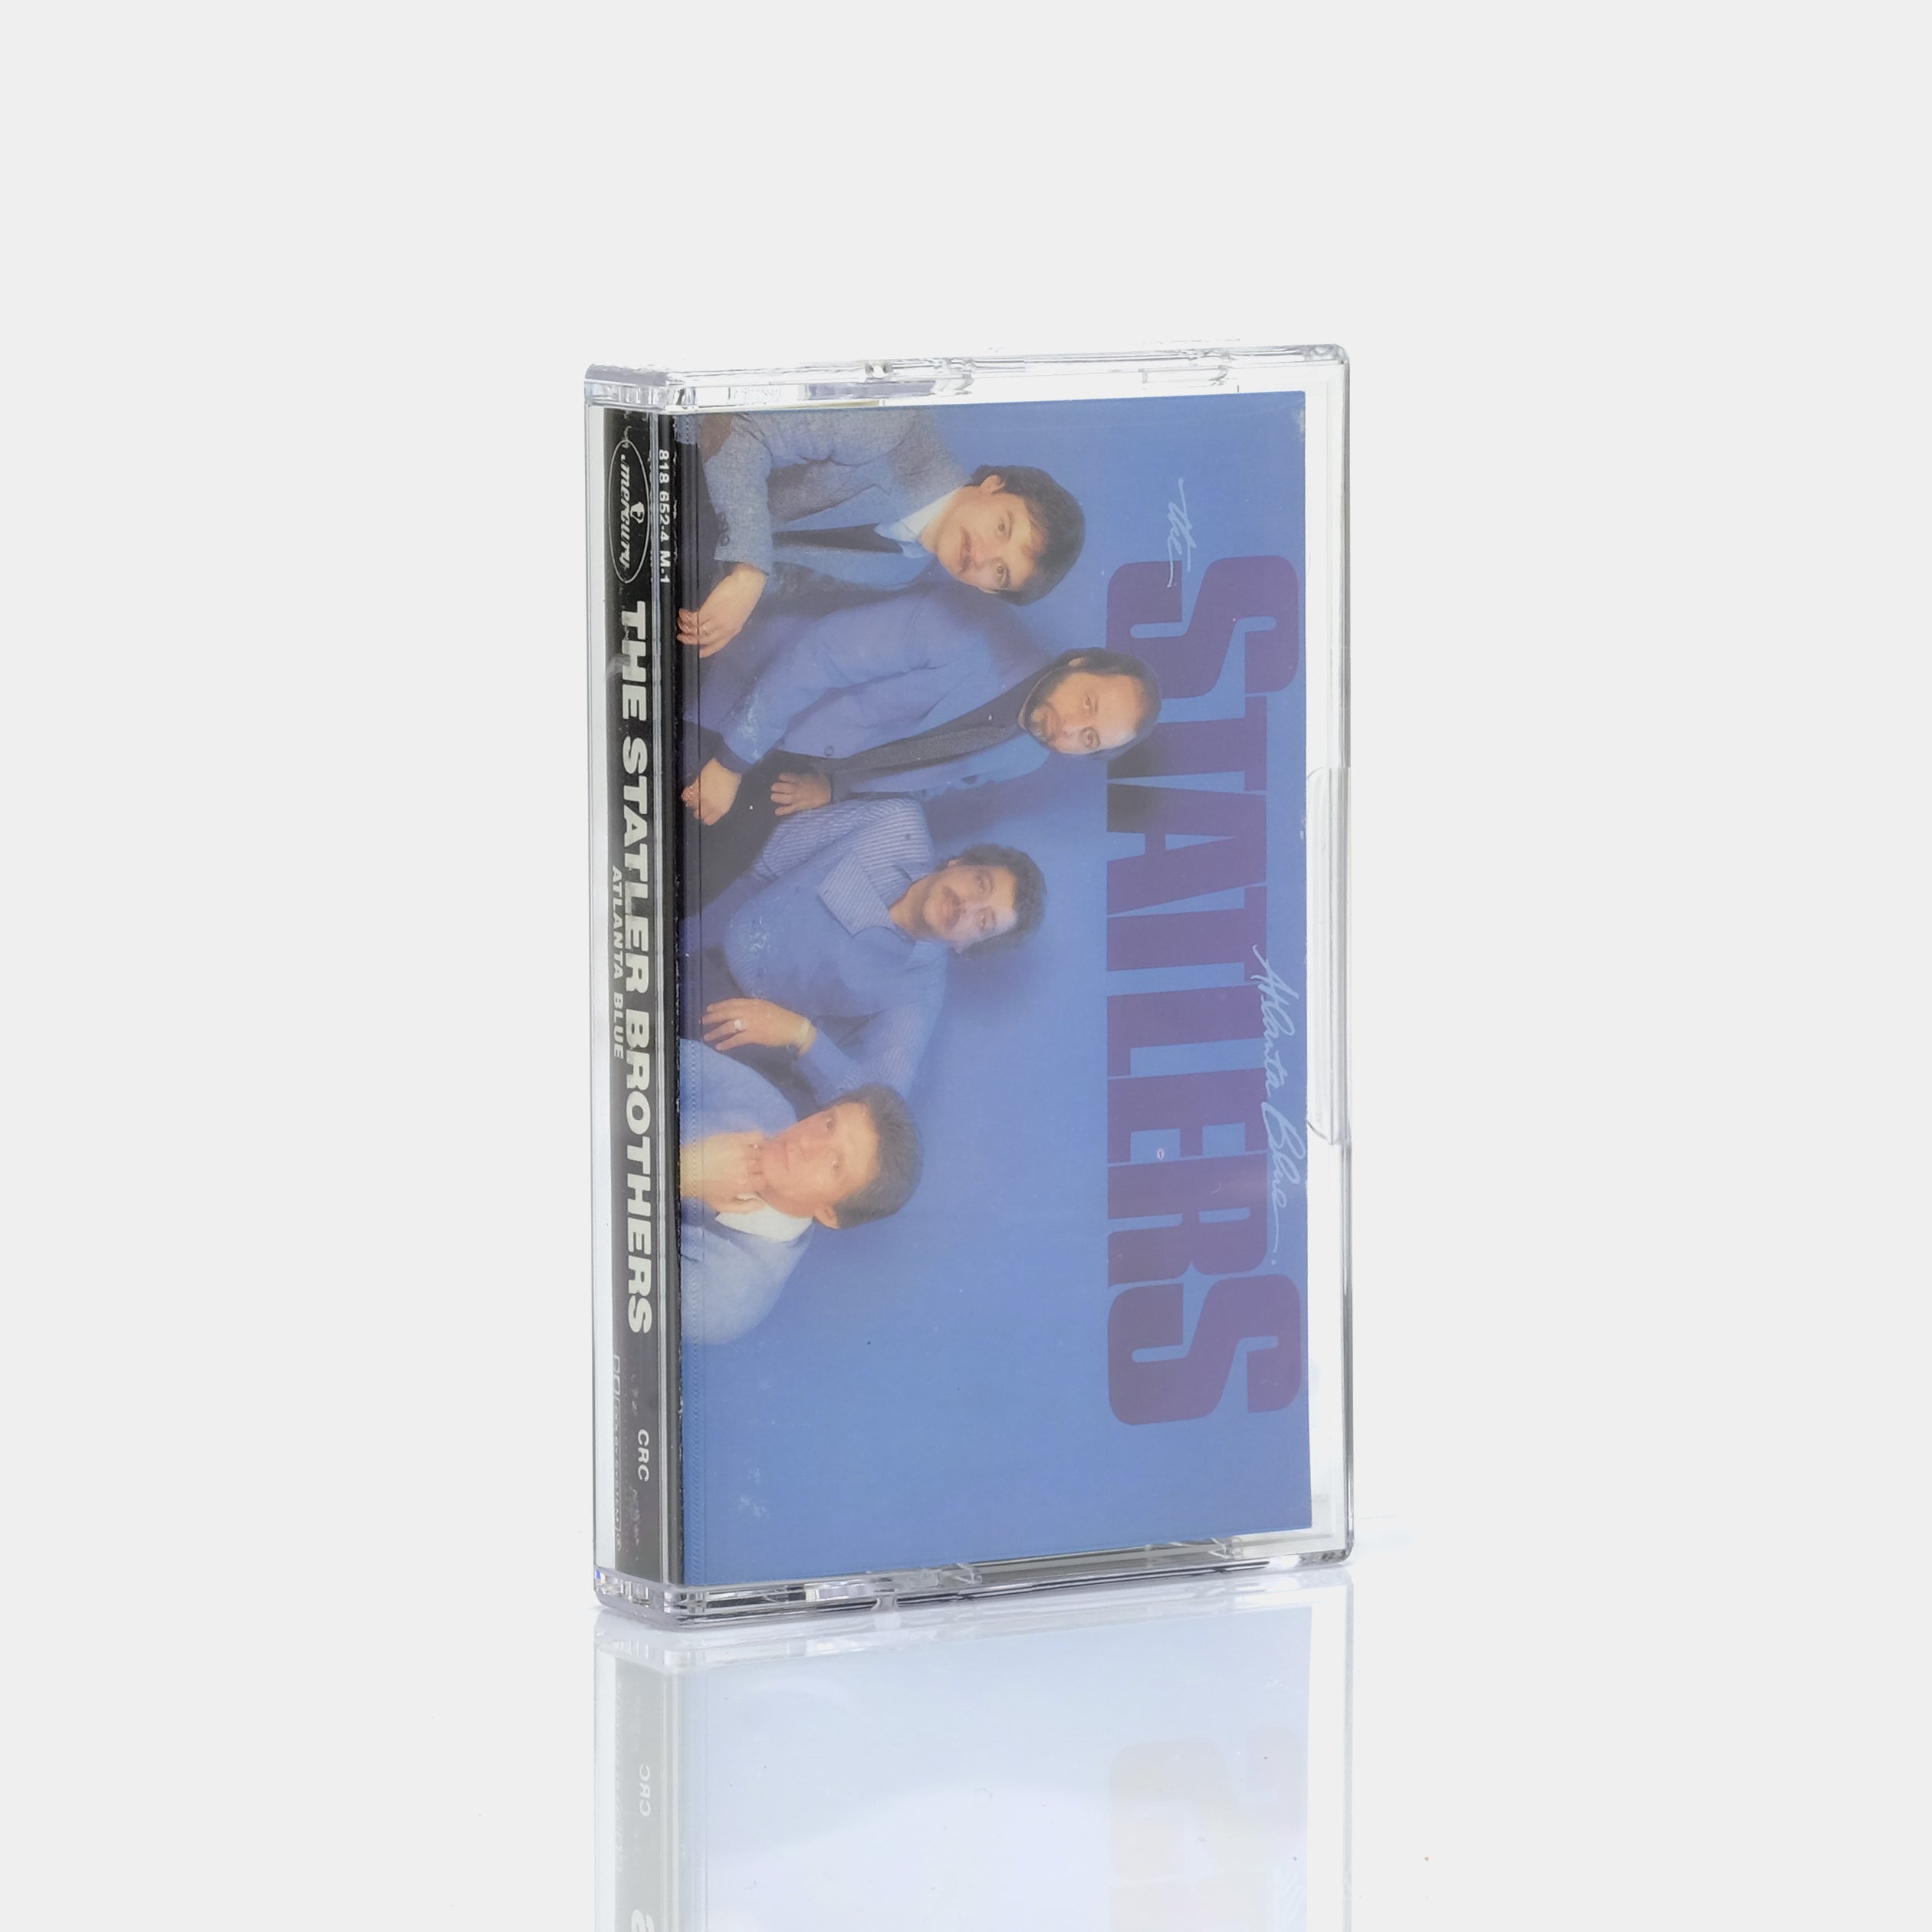 The Statlers - Atlanta Blue Cassette Tape